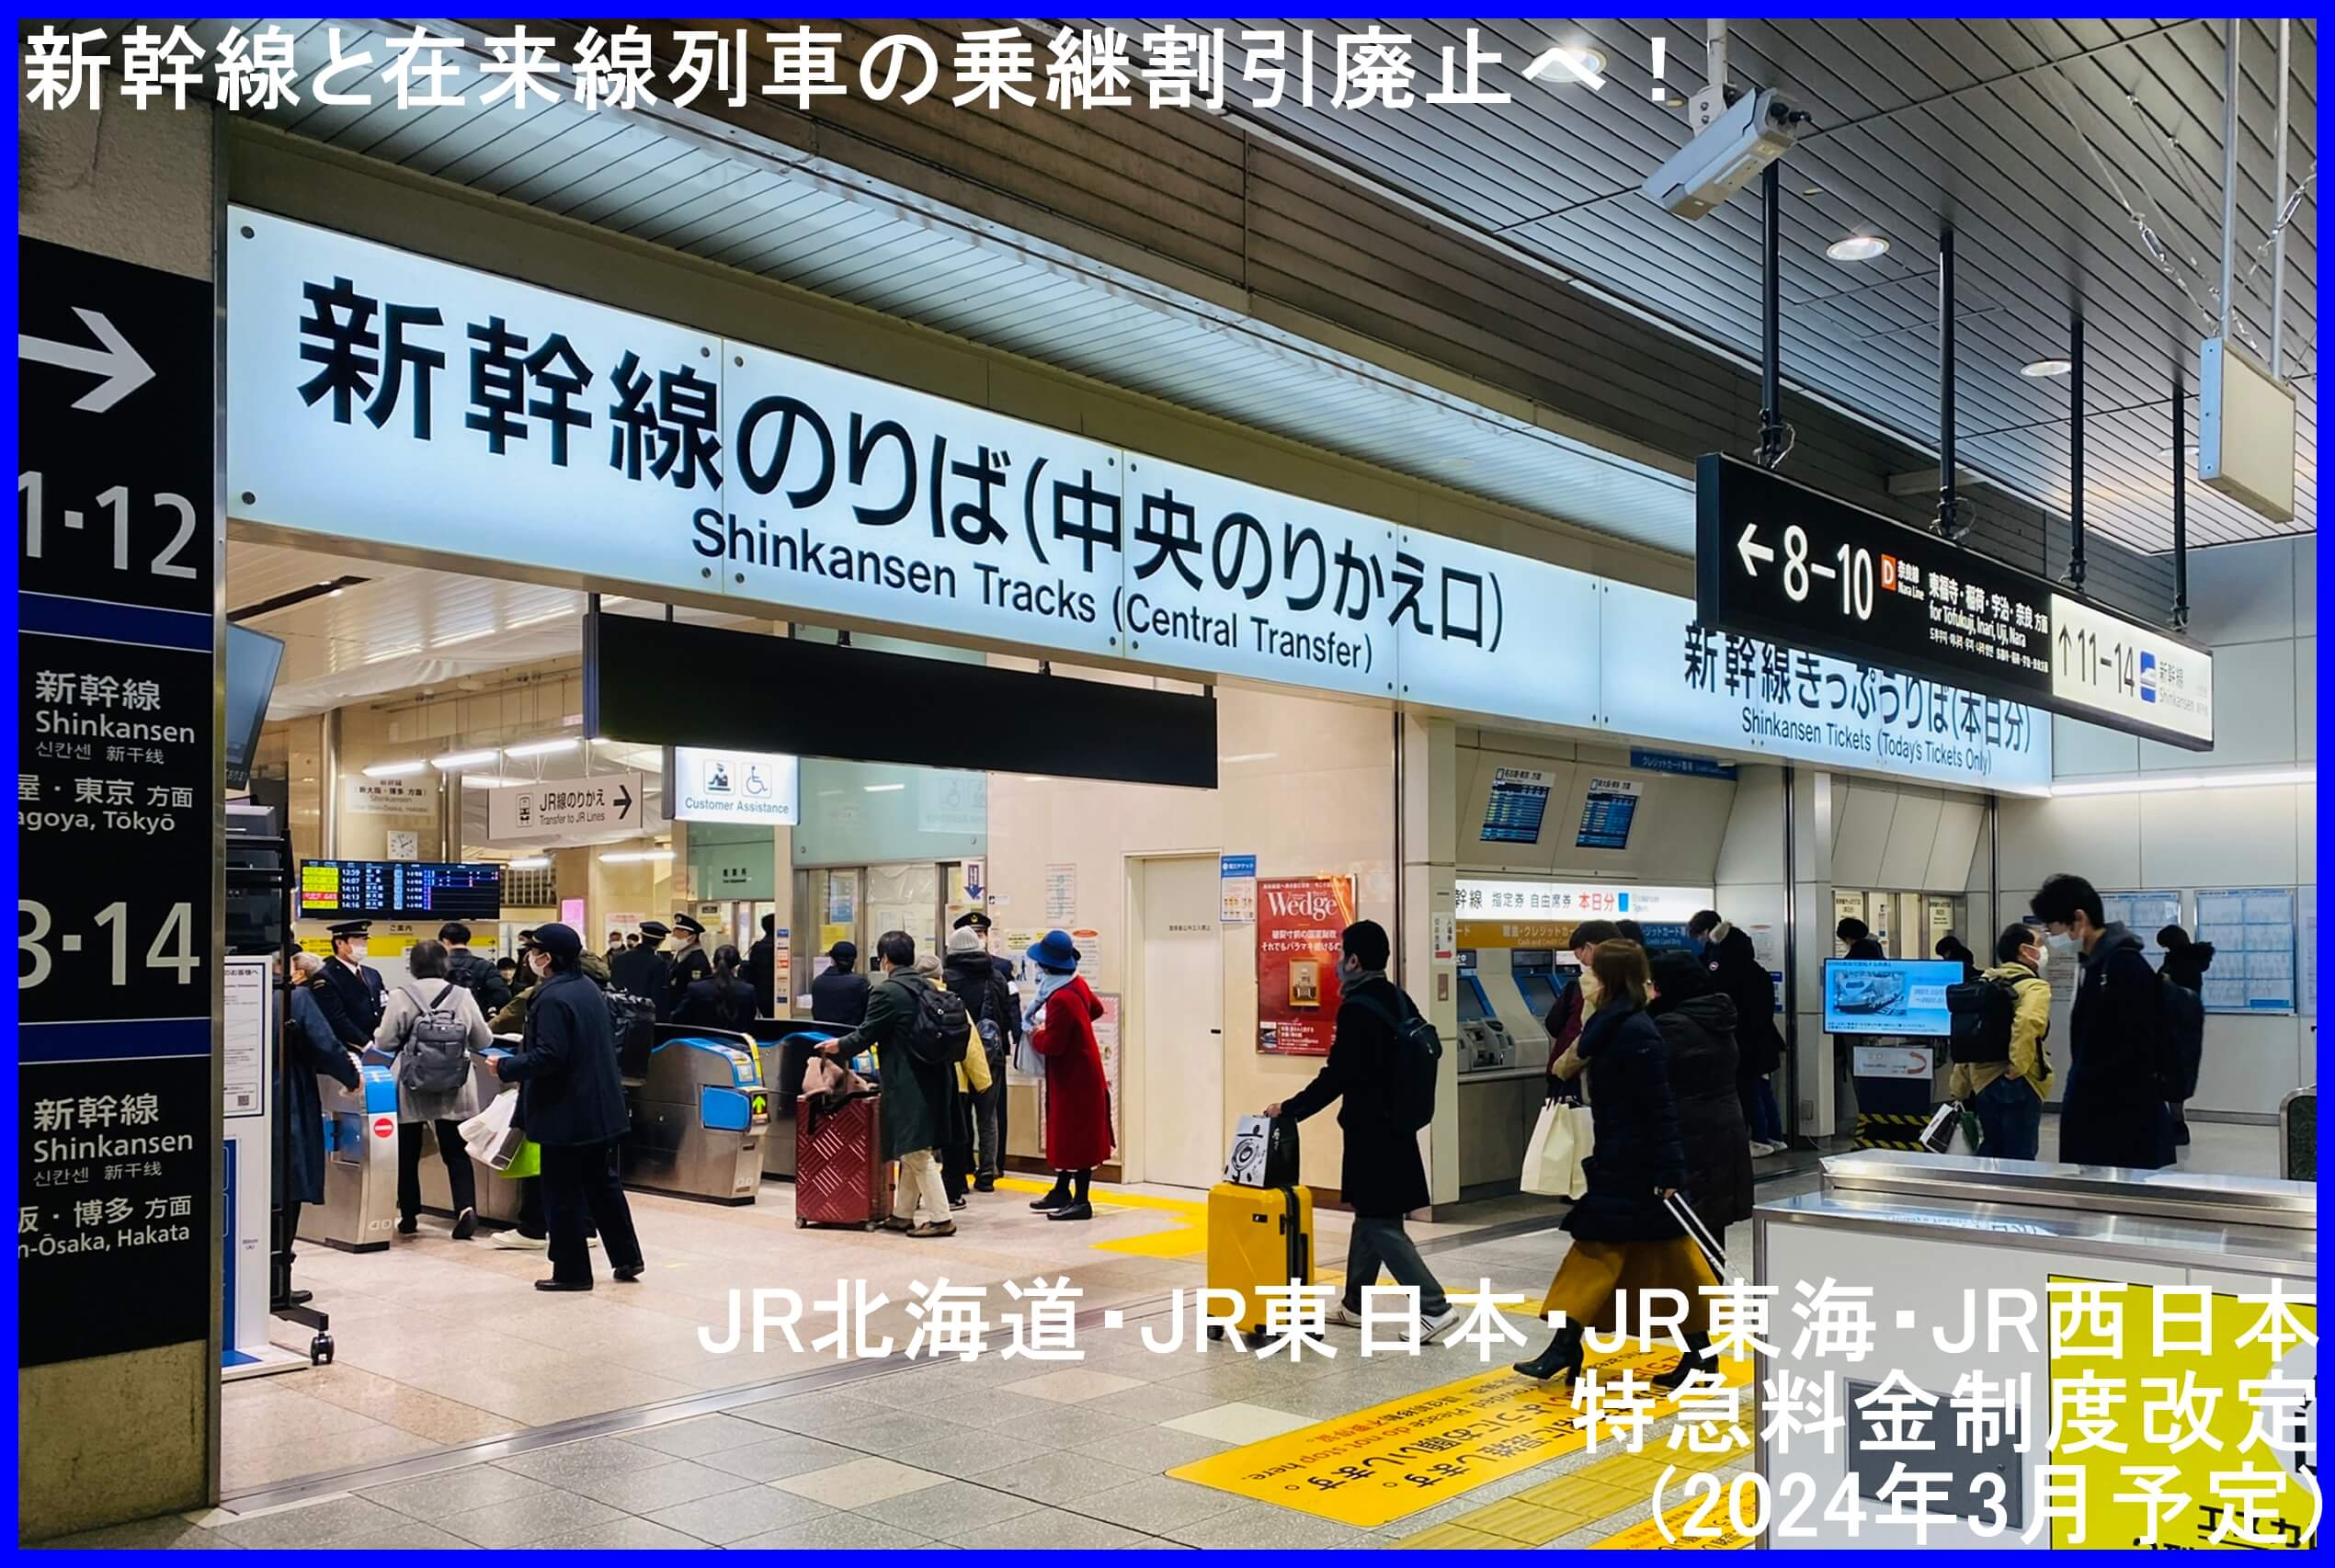 新幹線と在来線列車の乗継割引廃止へ！　JR北海道・JR東日本・JR東海・JR西日本特急料金制度改定(2024年3月予定)